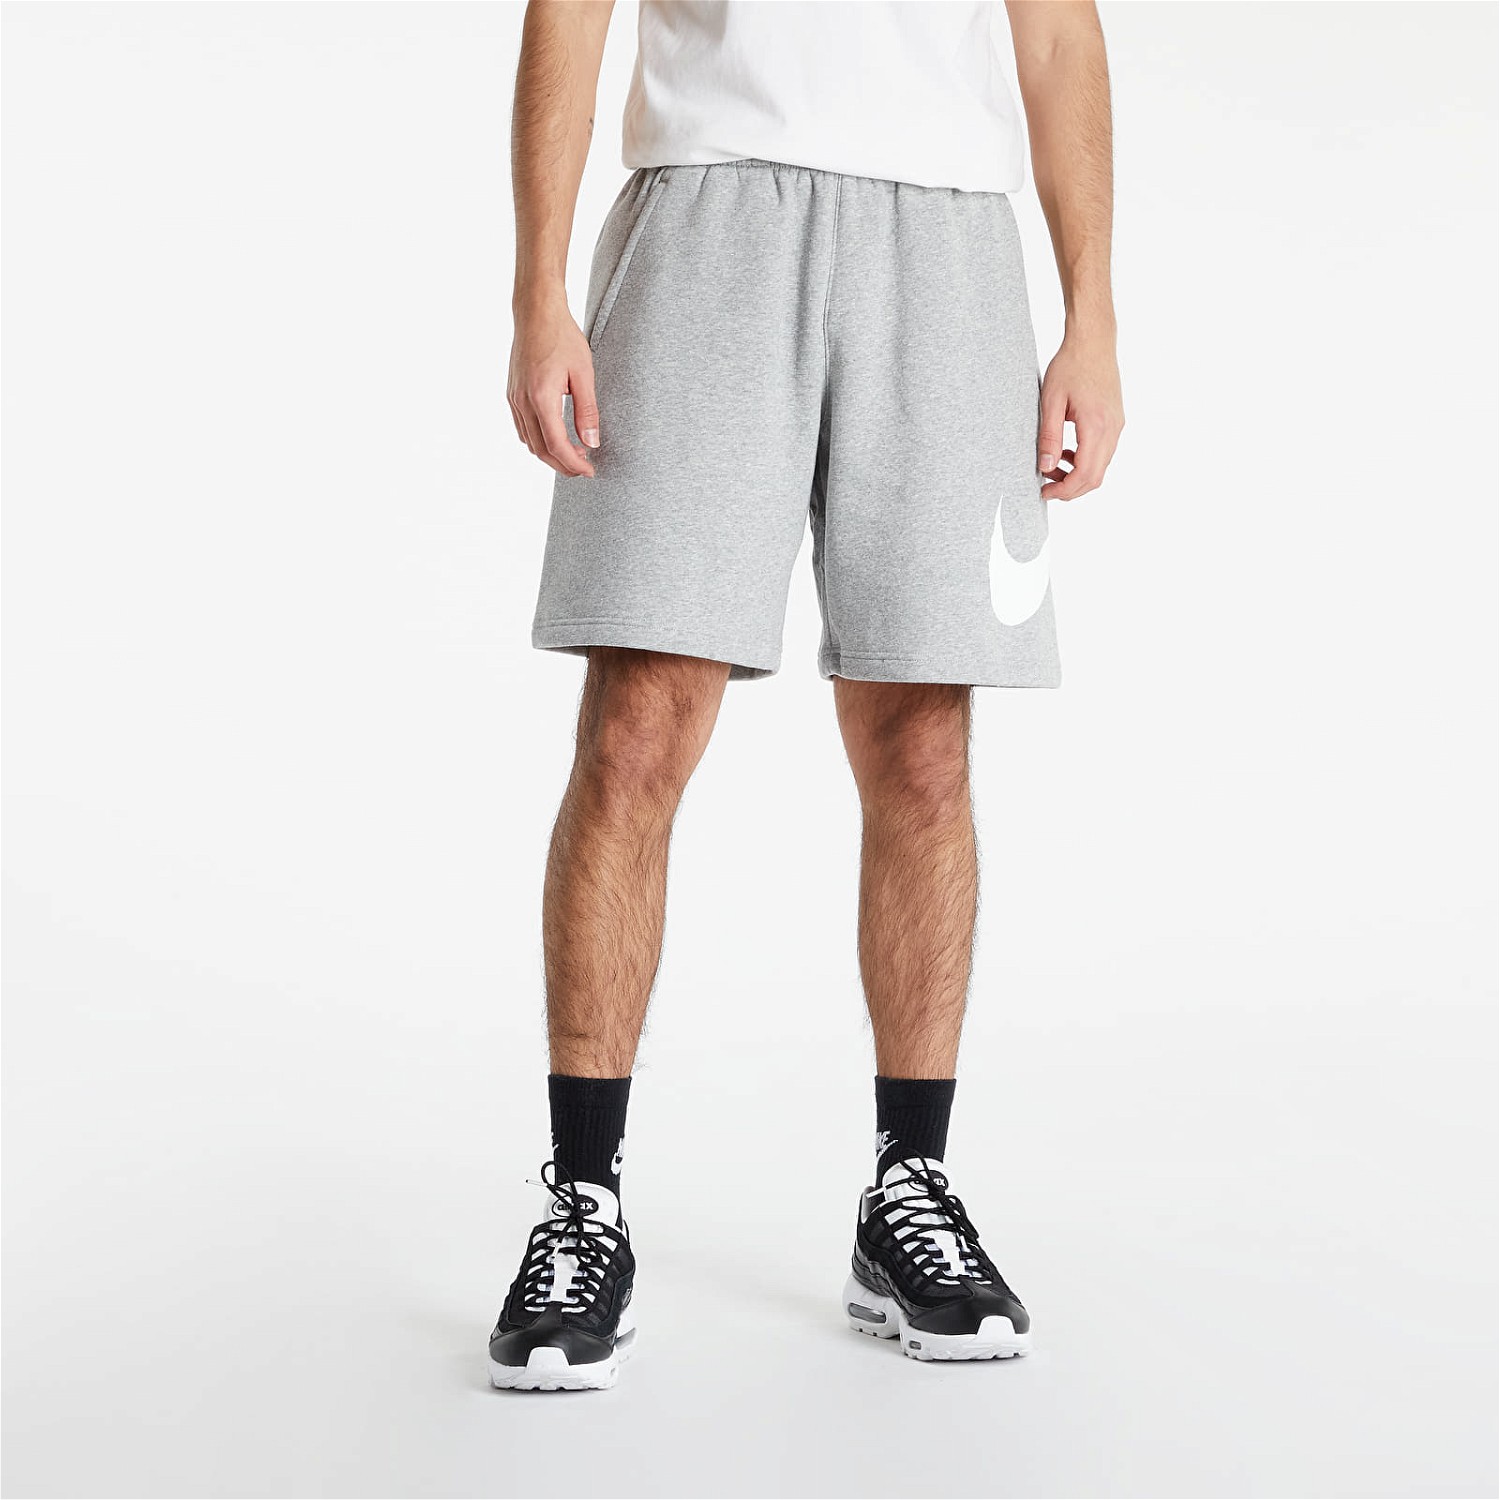 Rövidnadrág Nike Shorts Szürke | bv2721-063, 0